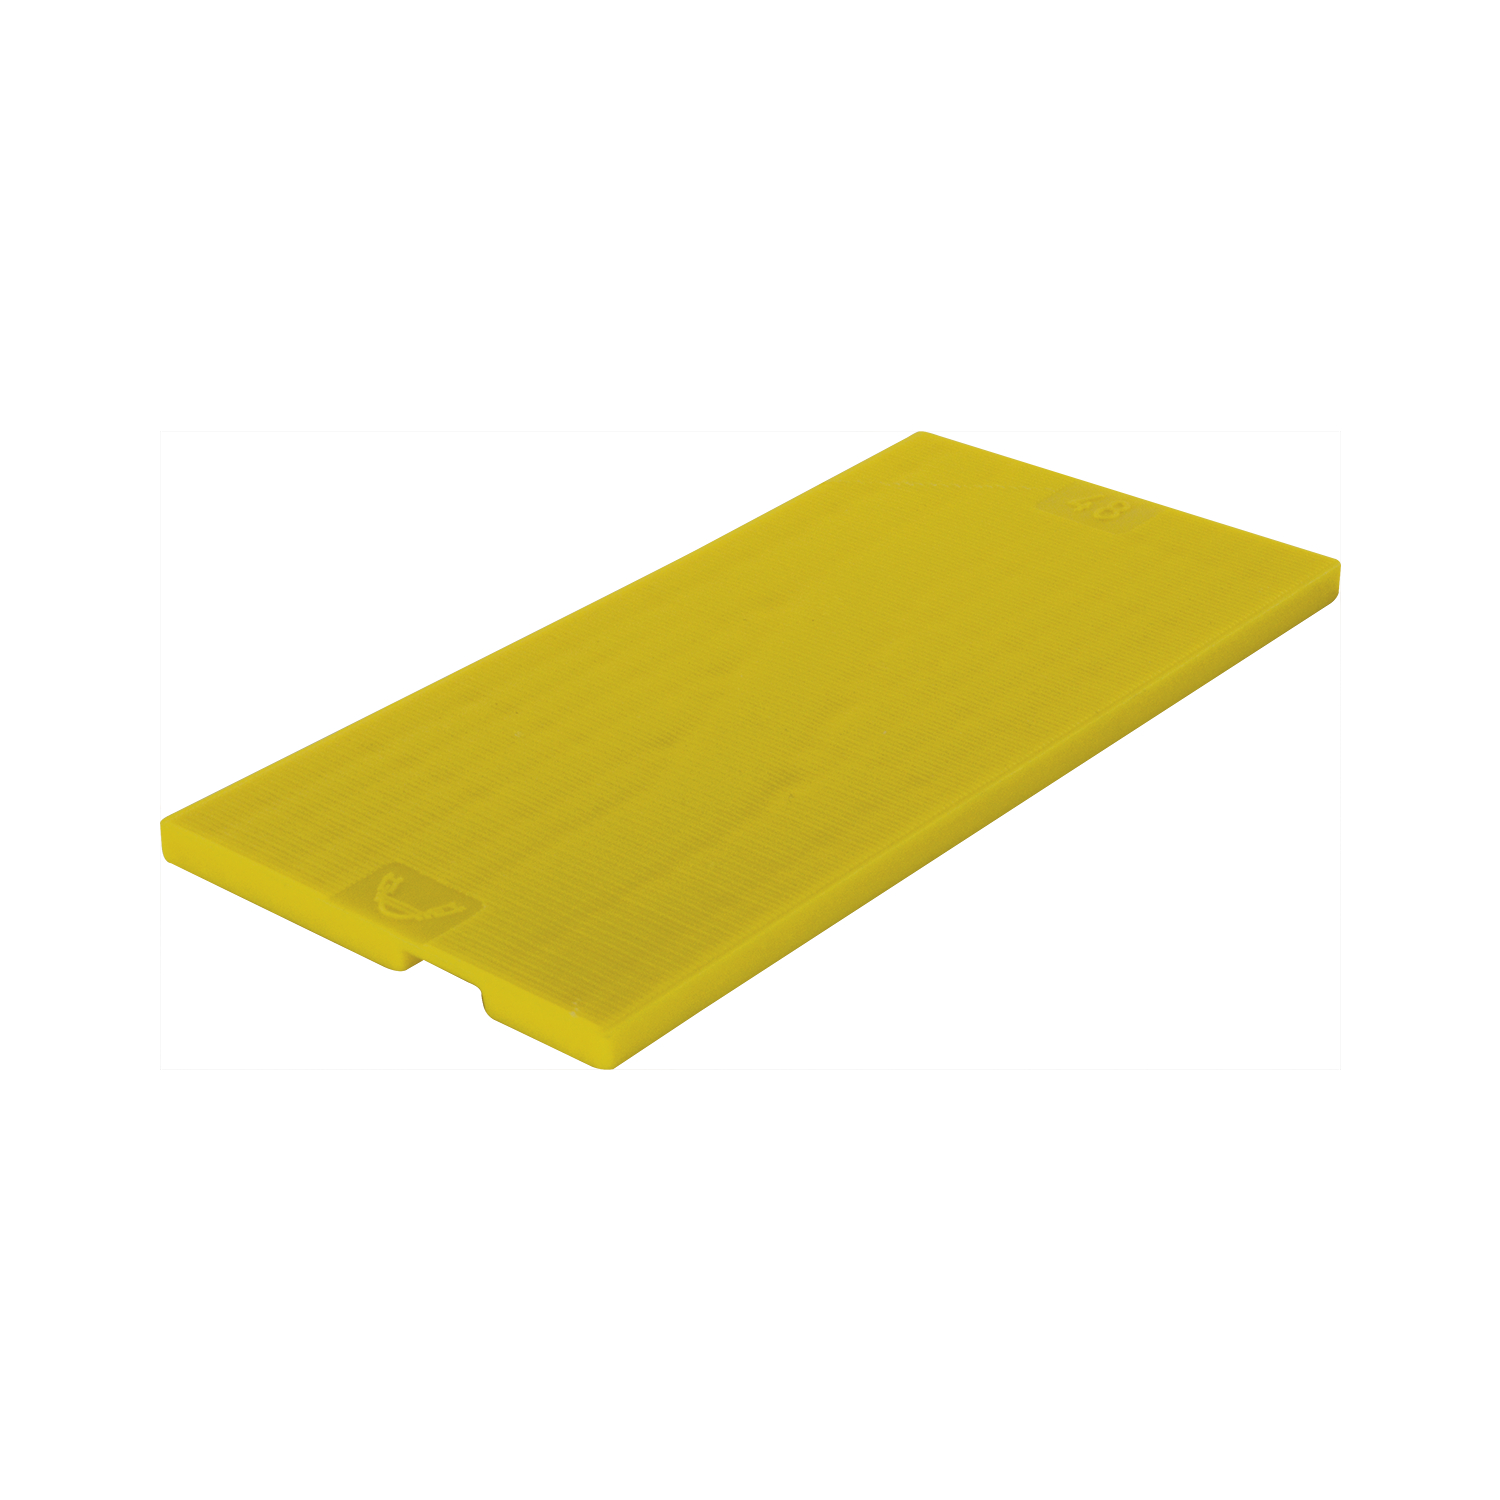 ROTO Spessori per vetro GL-IB 100 x 48 x 4 plastica giallo